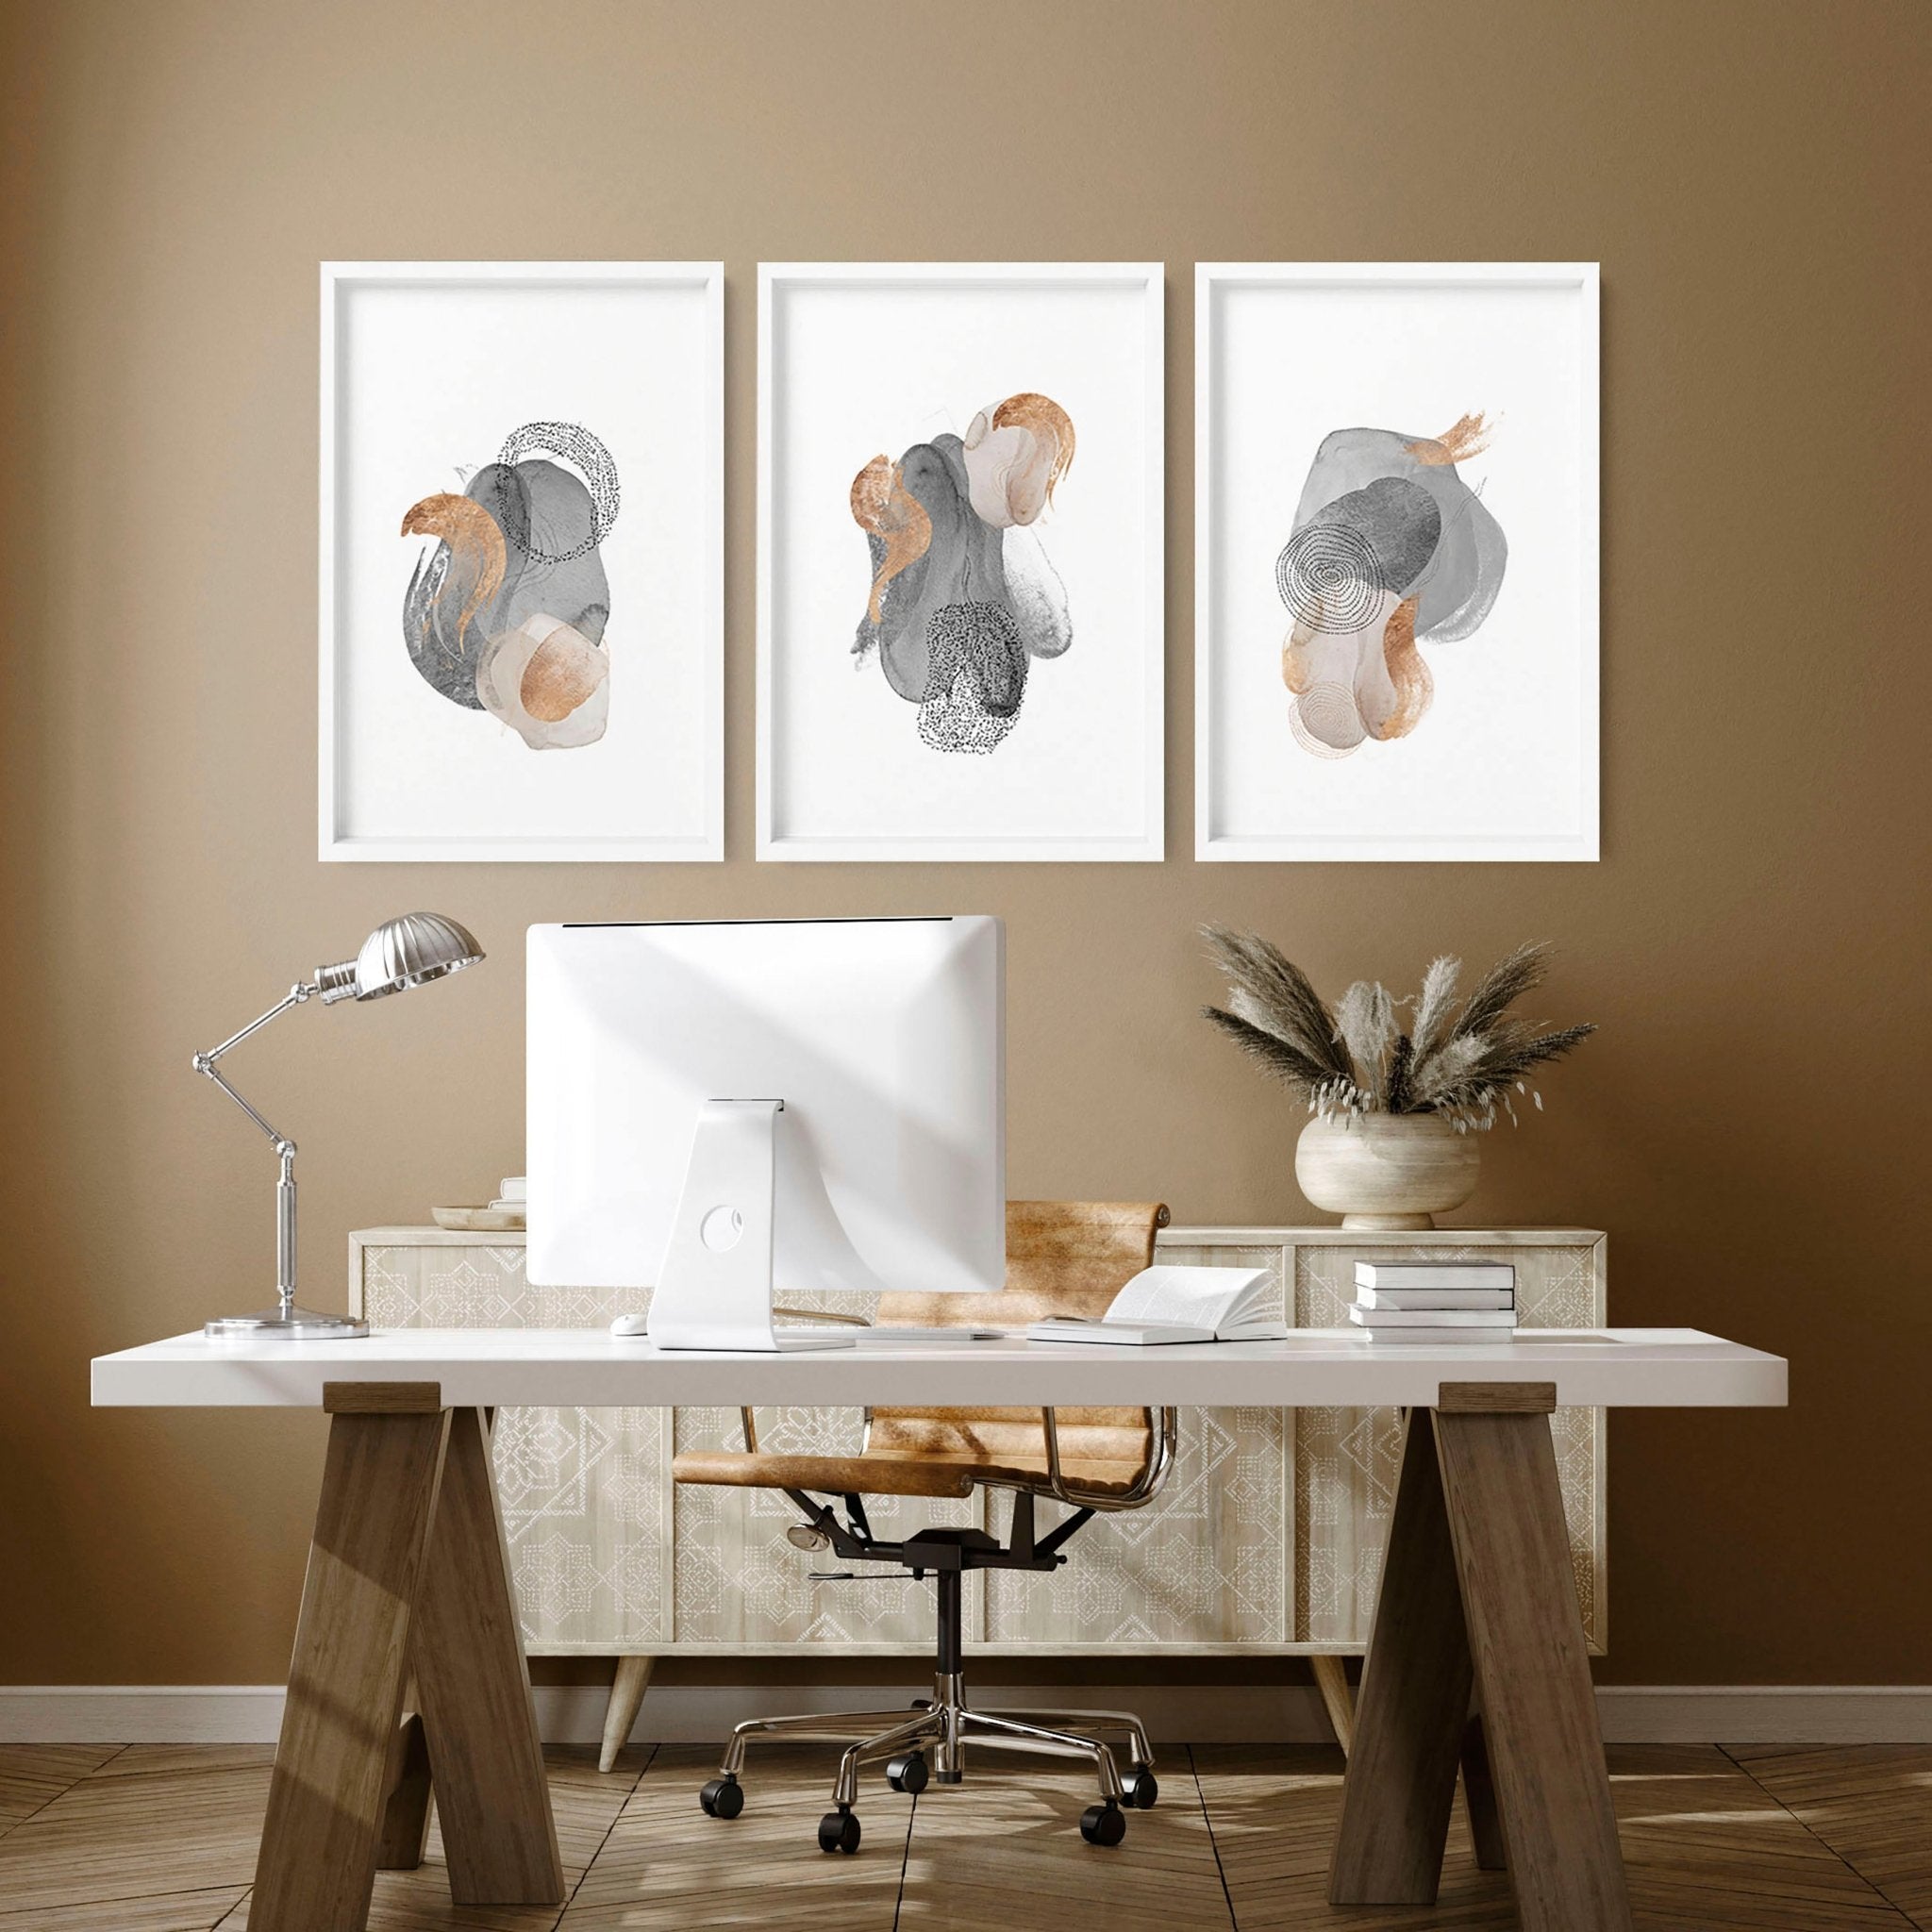 Pintura abstracta 3 paneles enmarcados impresiones de arte de pared para el escritorio de la oficina en casa de los hombres Decoración, gris y cobre Tono de la tierra Conjunto de estampado de moda para el dormitorio de los hombres